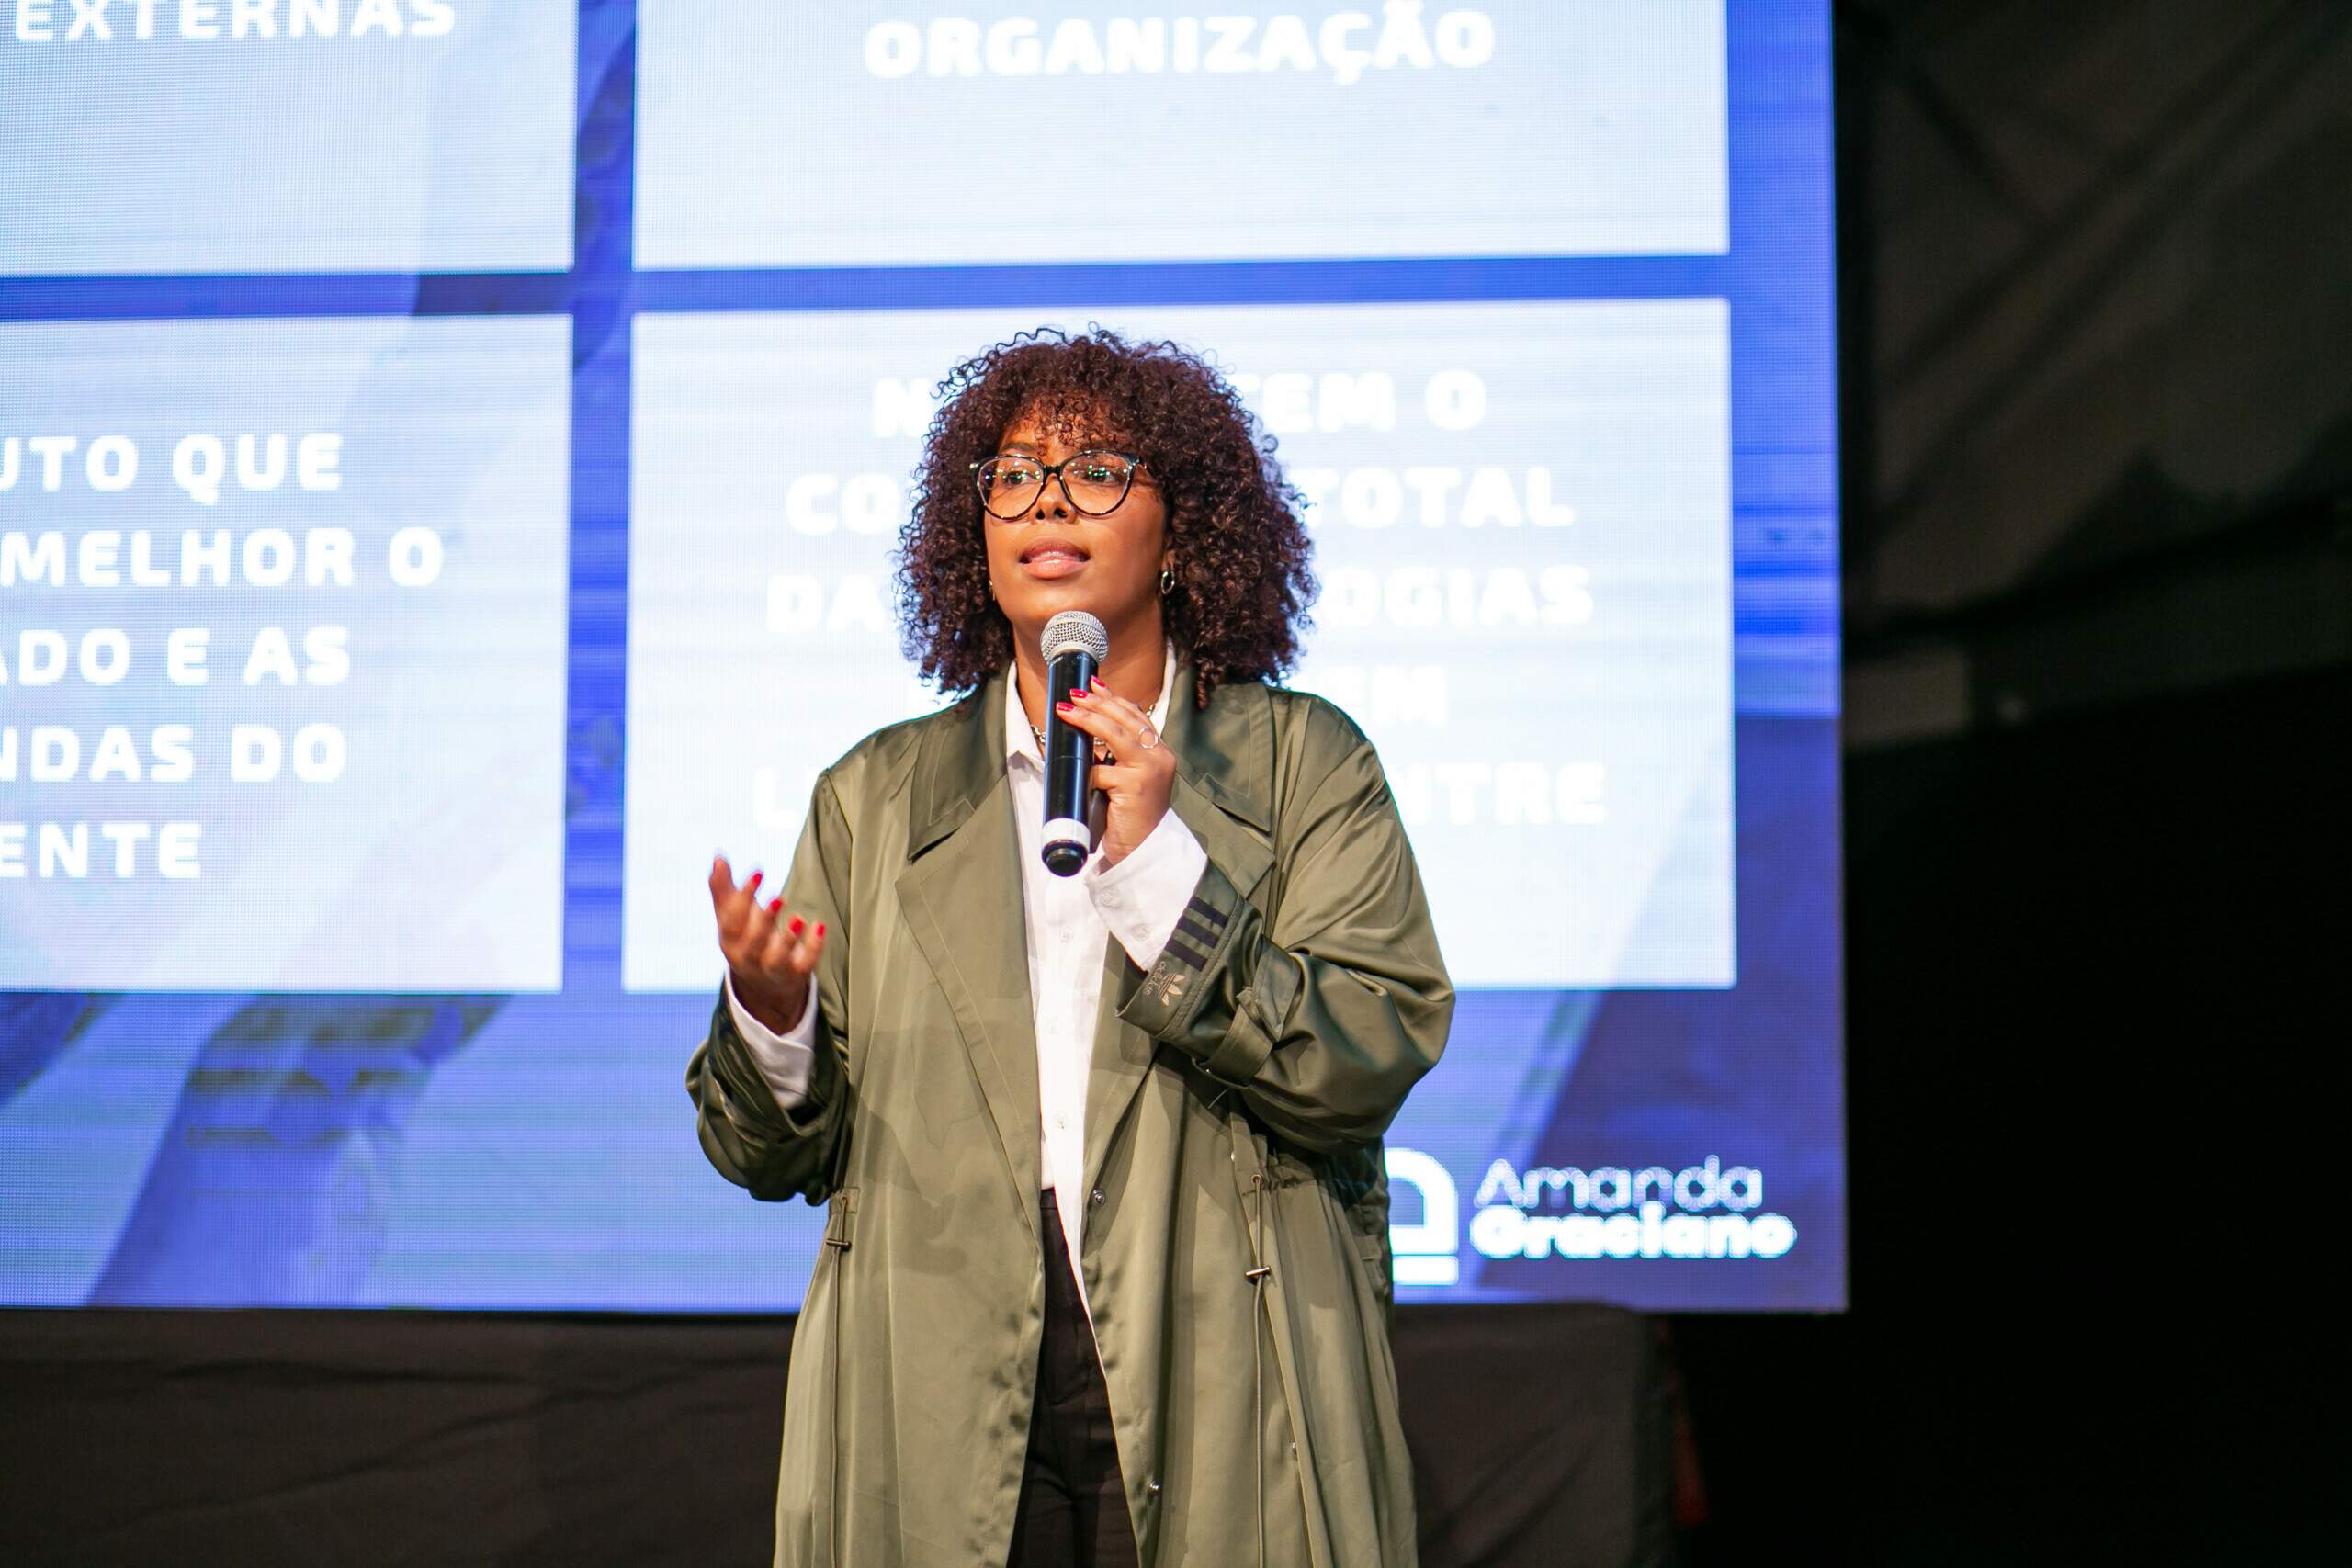 Inovação aberta rompe mentalidade de silo das empresas, avalia Amanda Graciano